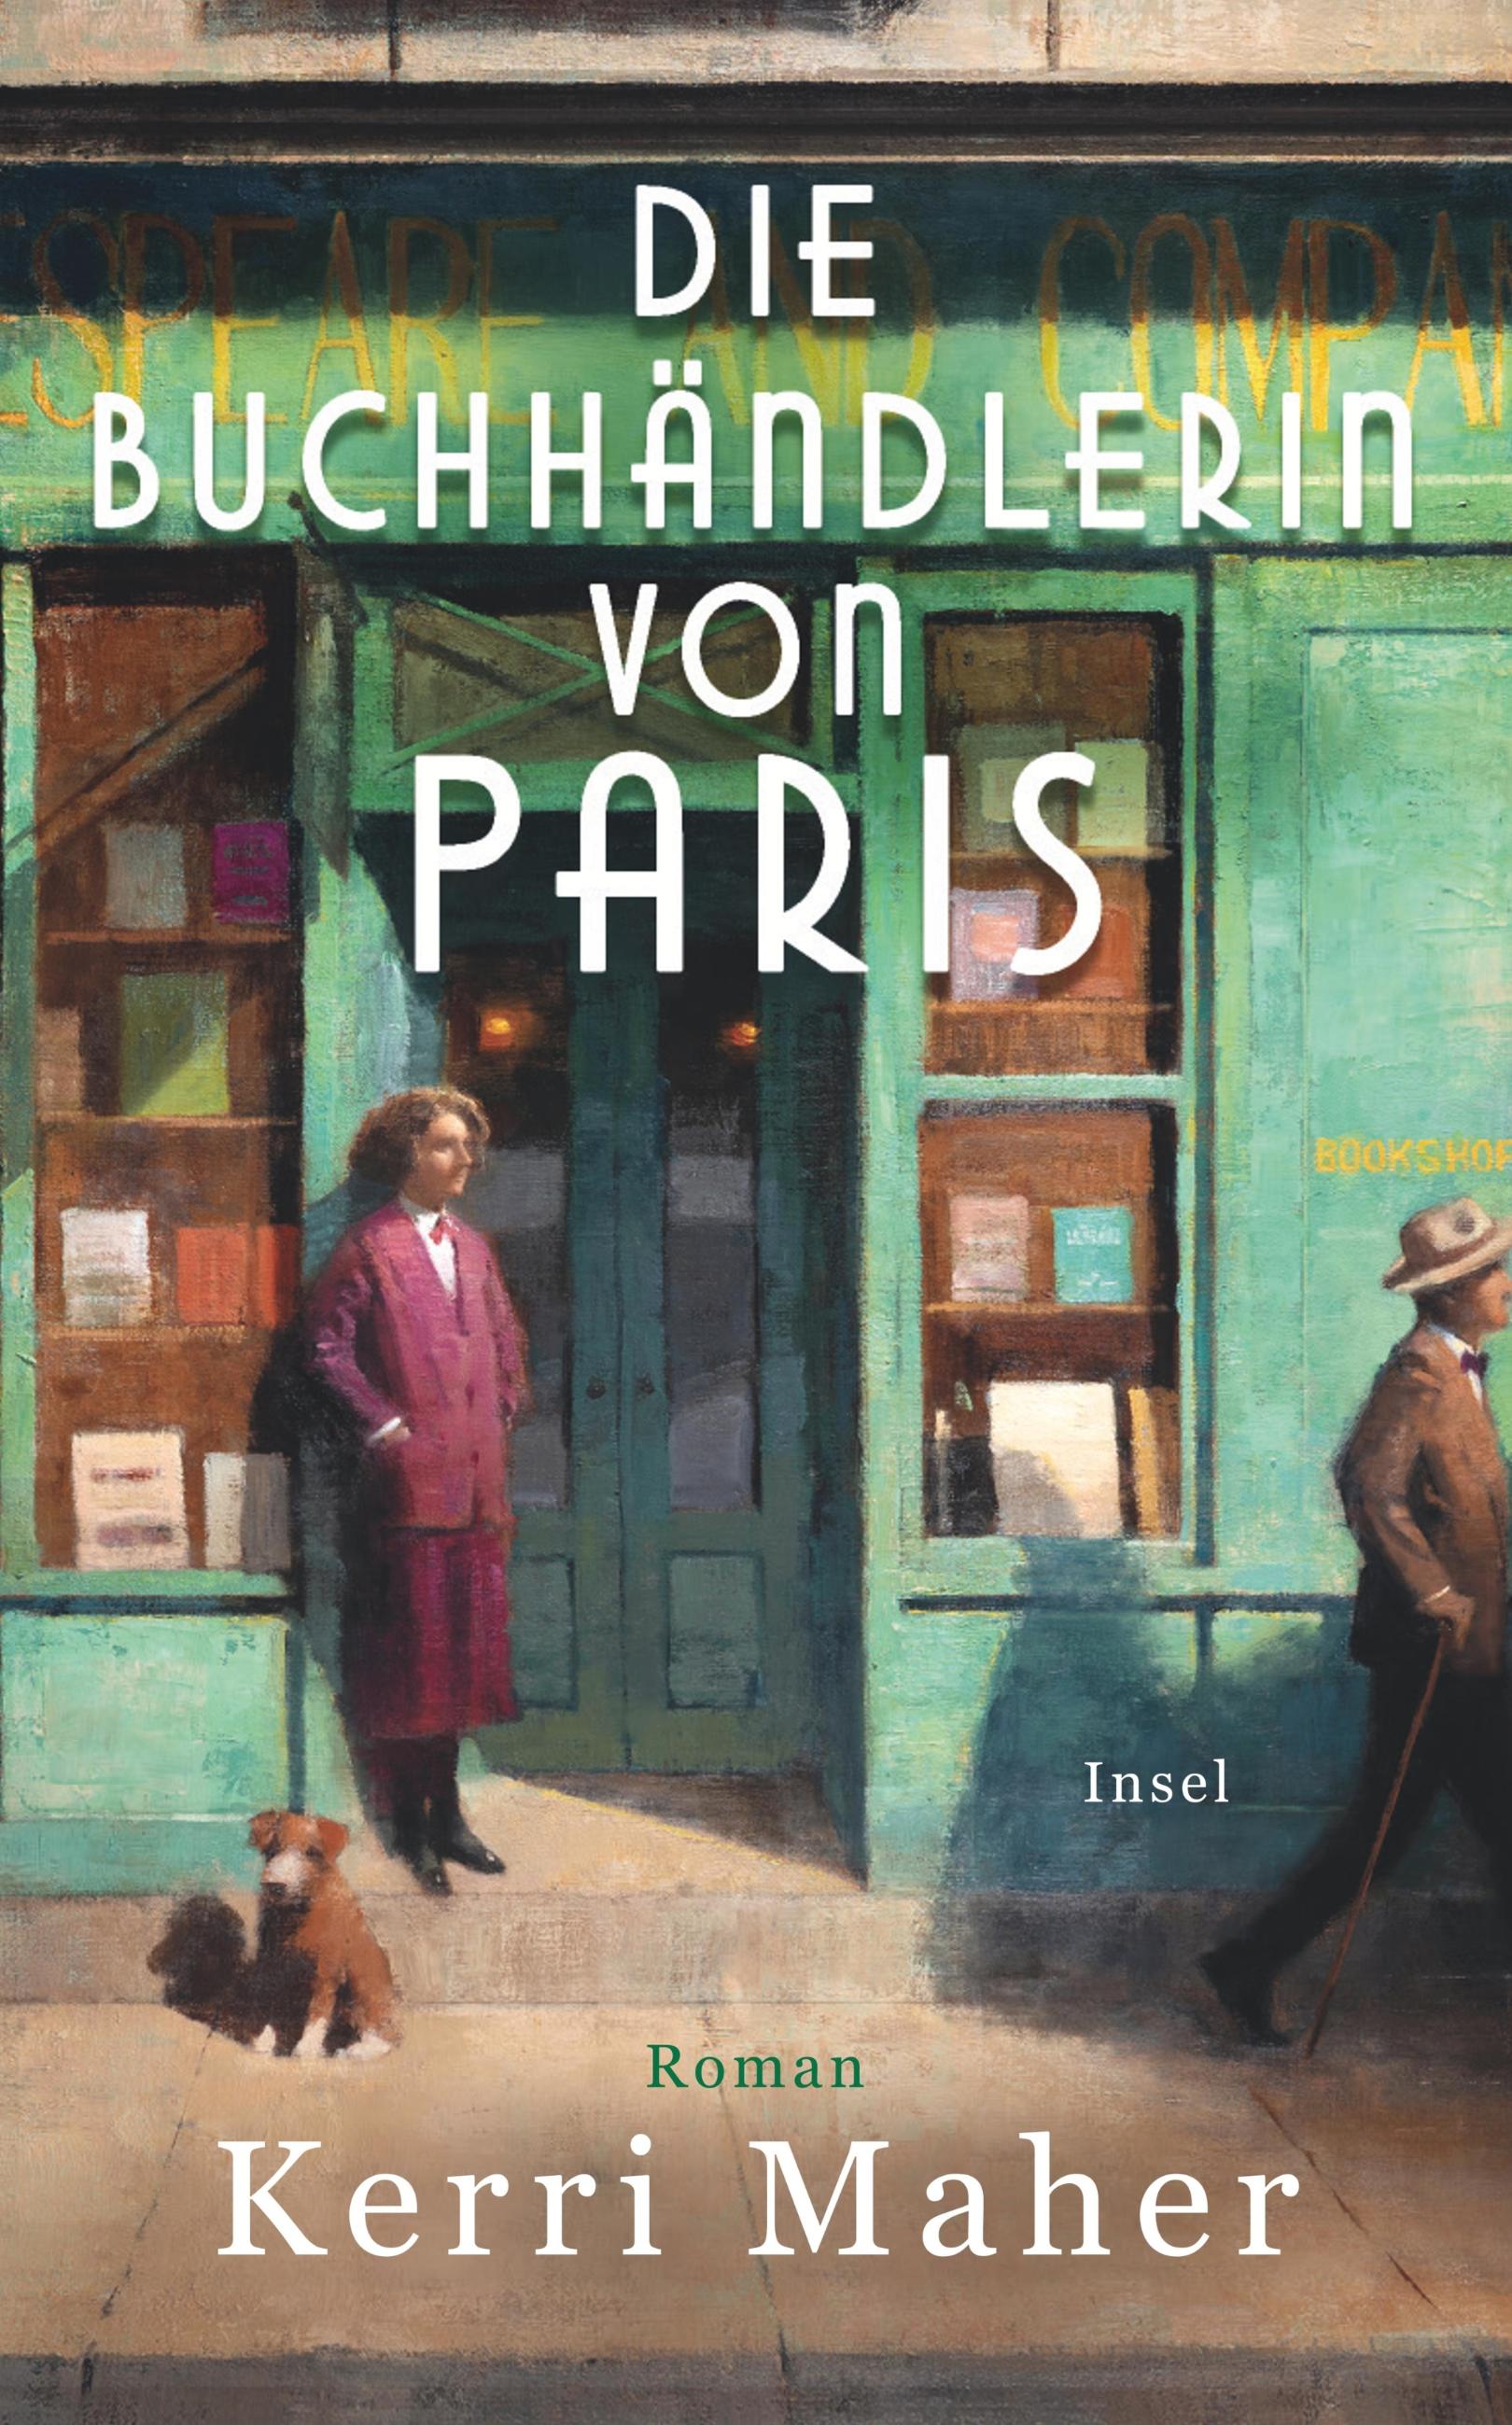 Kerri Maher - Die Buchhändlerin von Paris (c) Insel Verlag